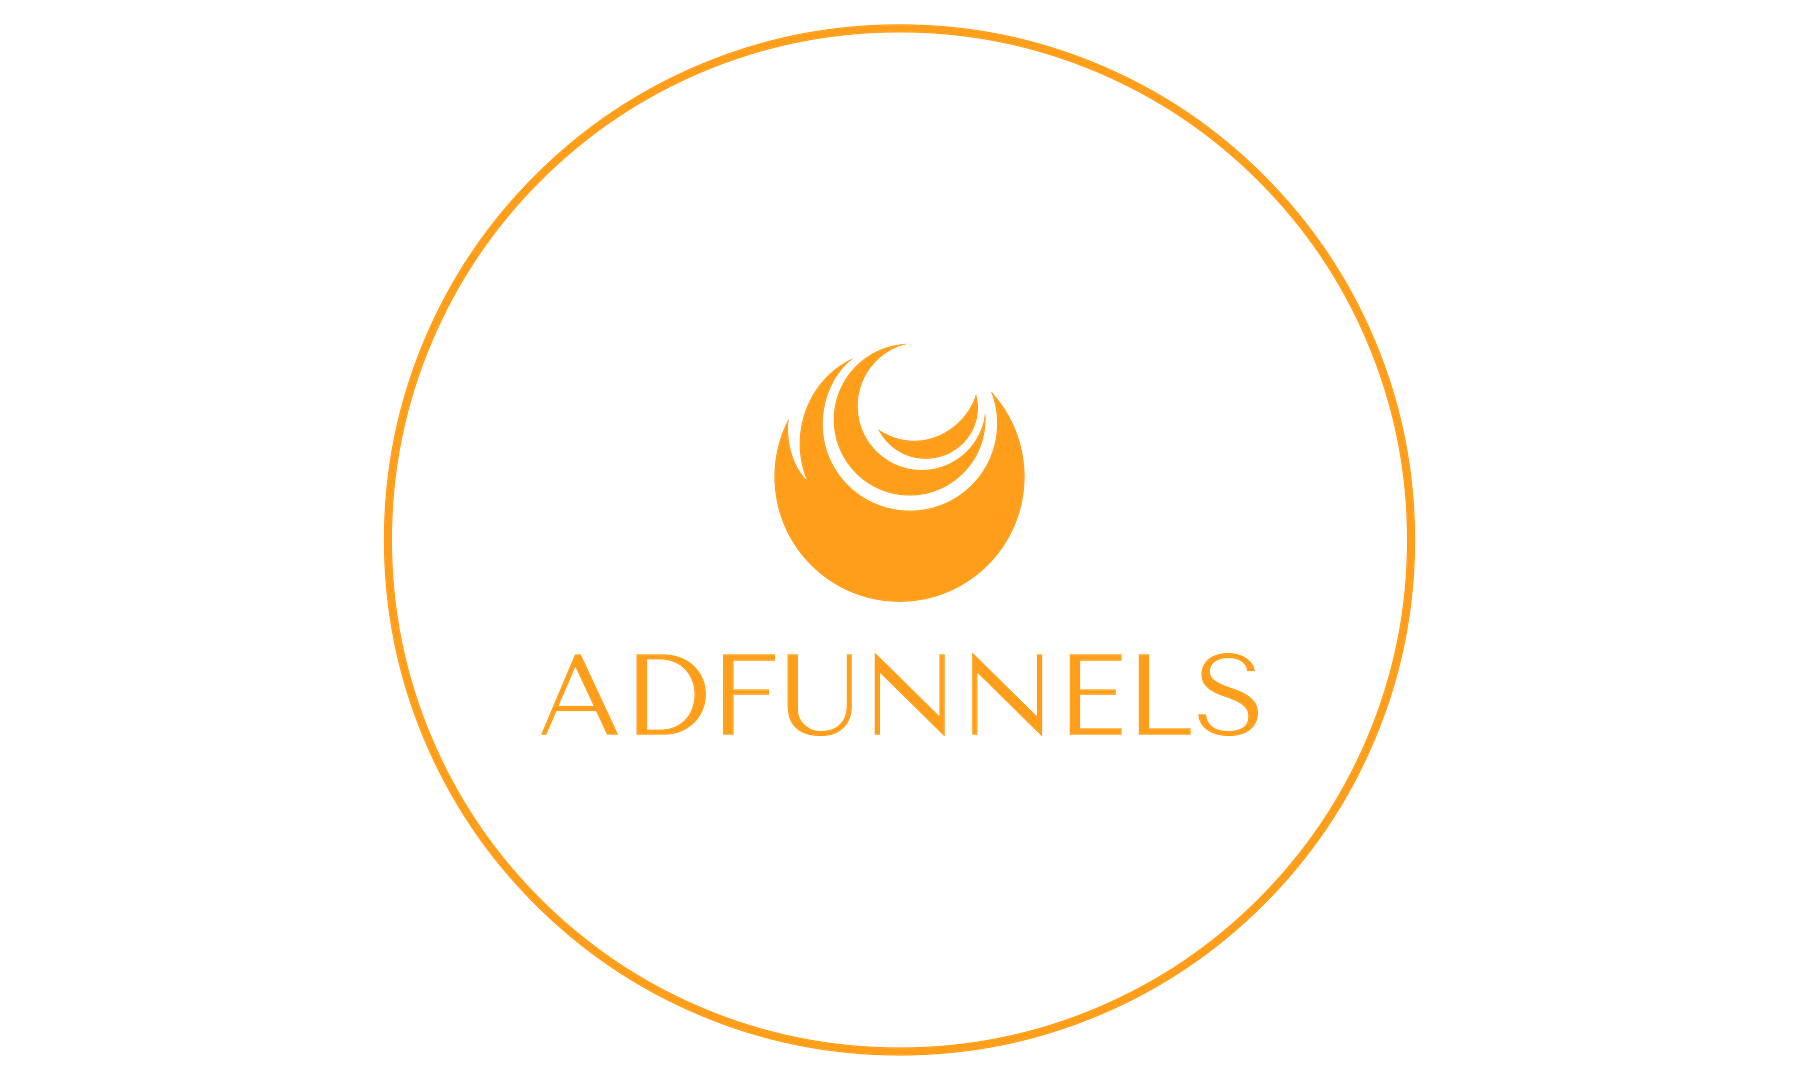 Adfunnels logo